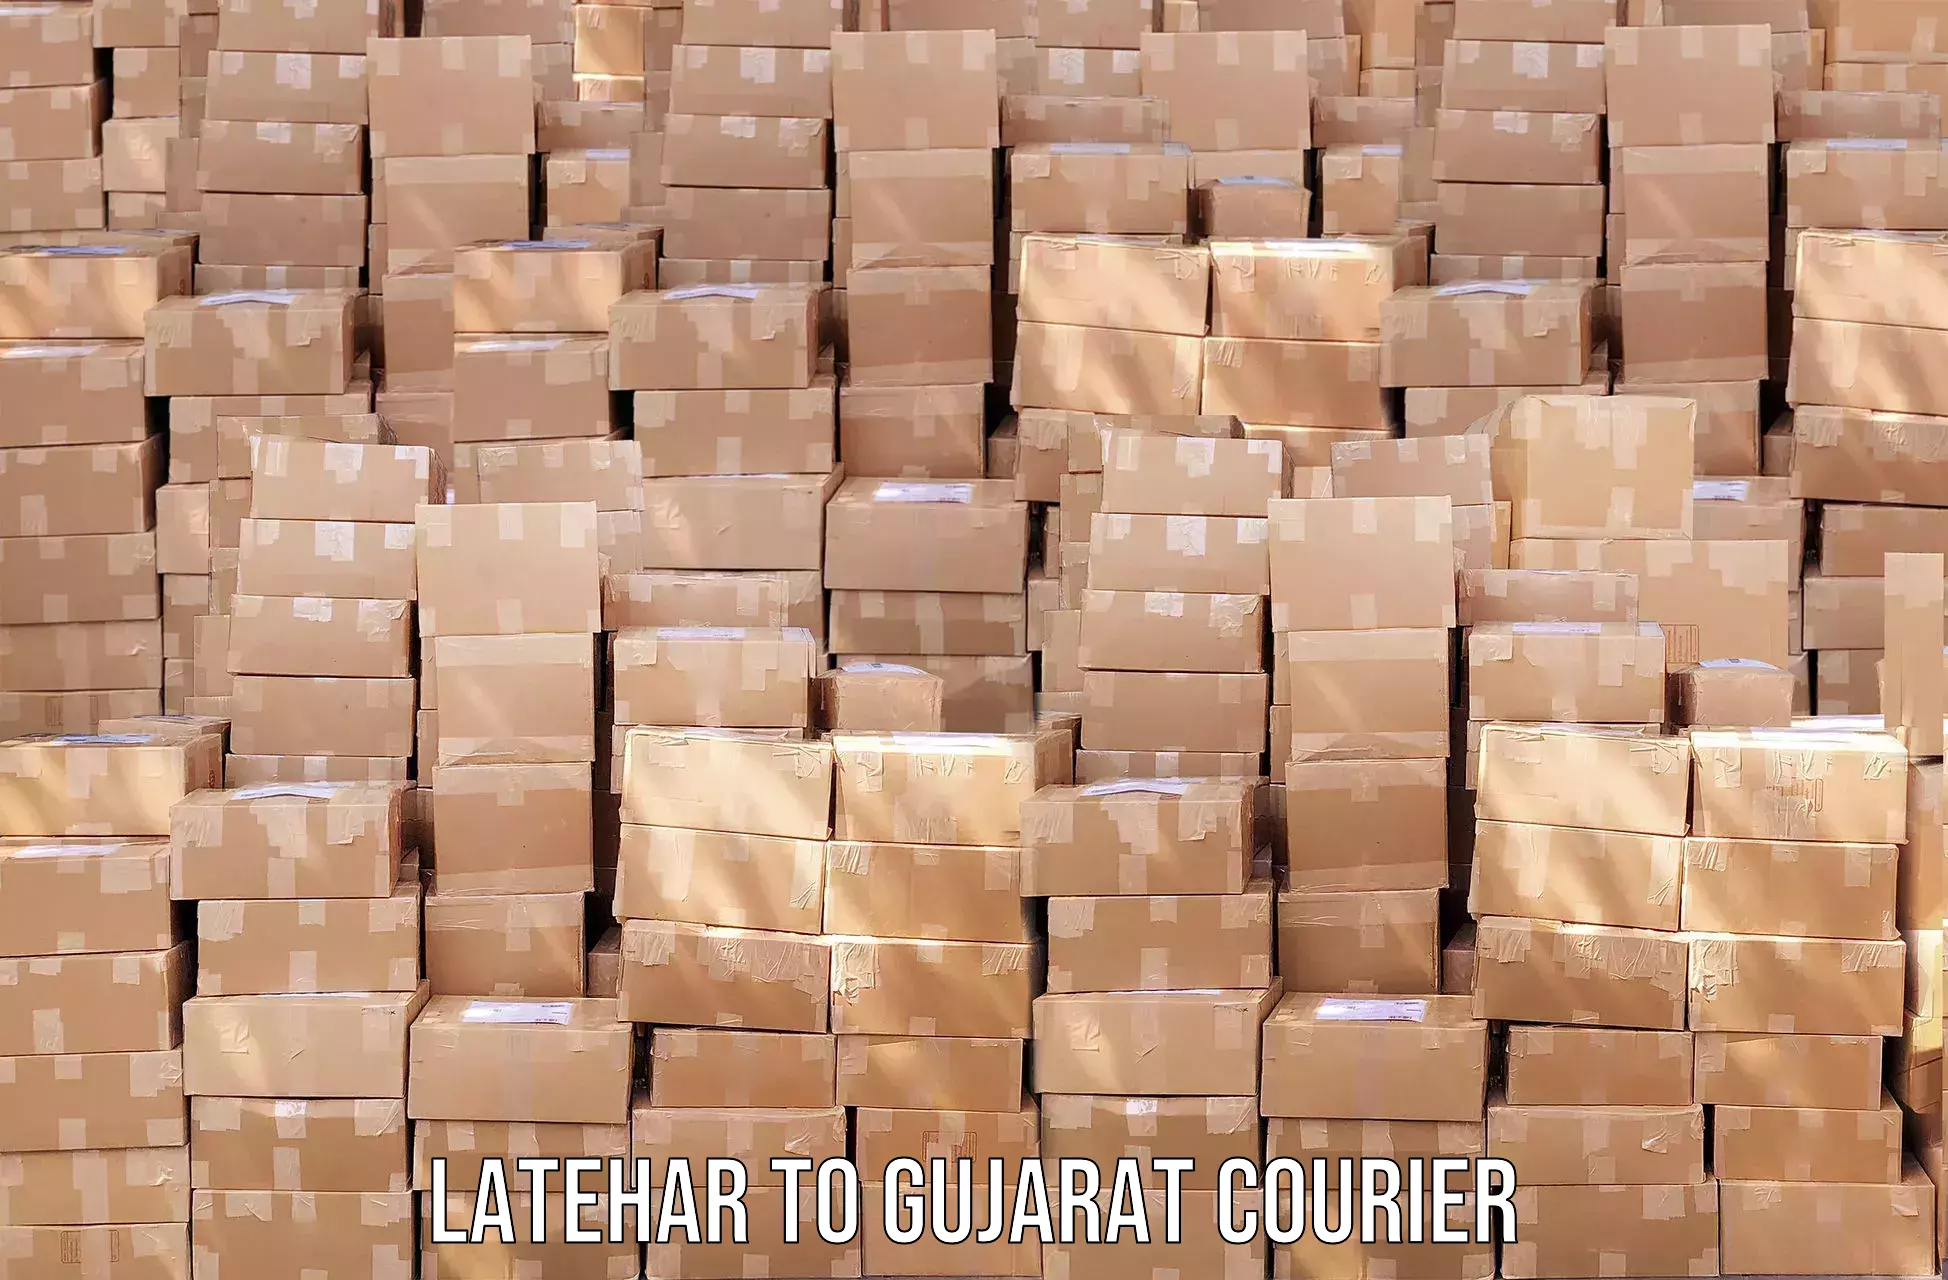 Efficient parcel service Latehar to Gujarat